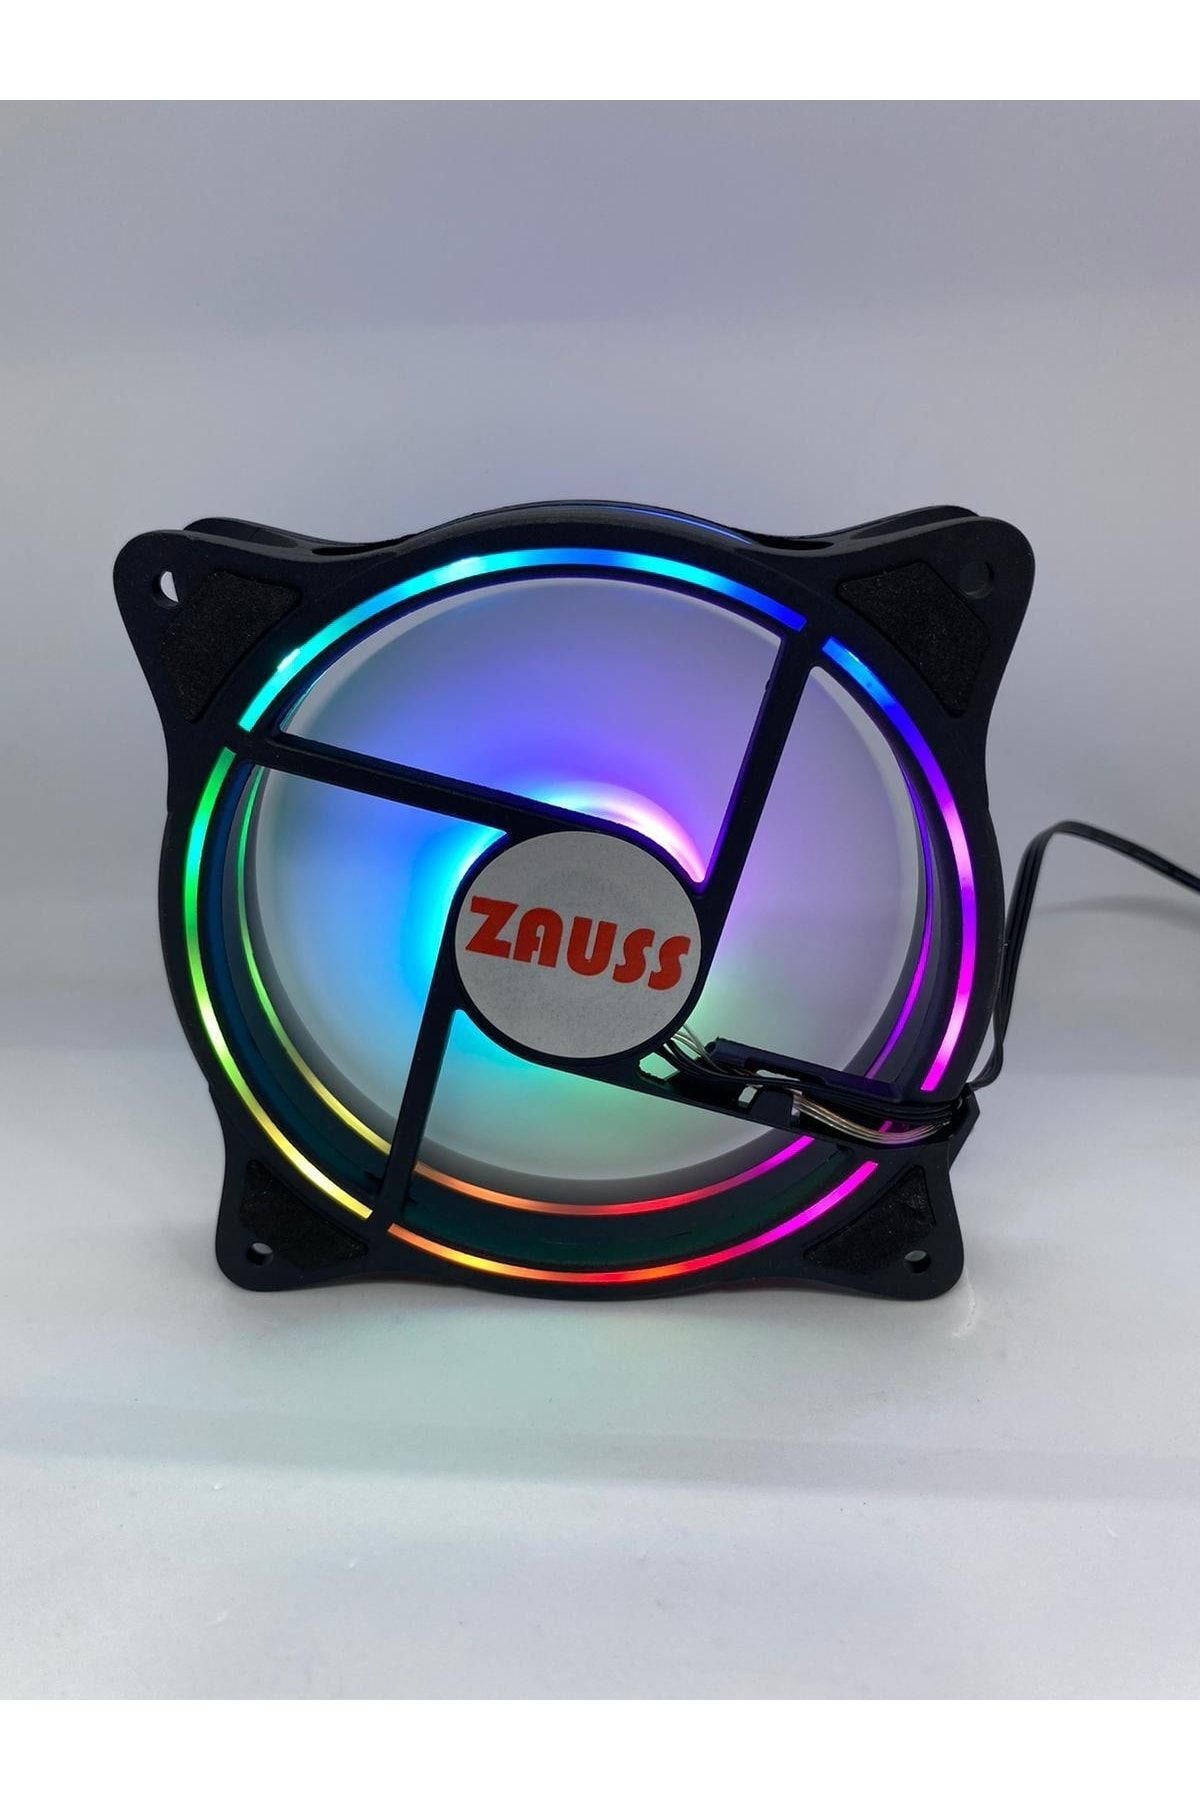 Unichrome 3 Renk Içi Ve Dışı Hareketli Rainbow Rgb Kasa Mining Fanı 12cm Fanı 0.3a